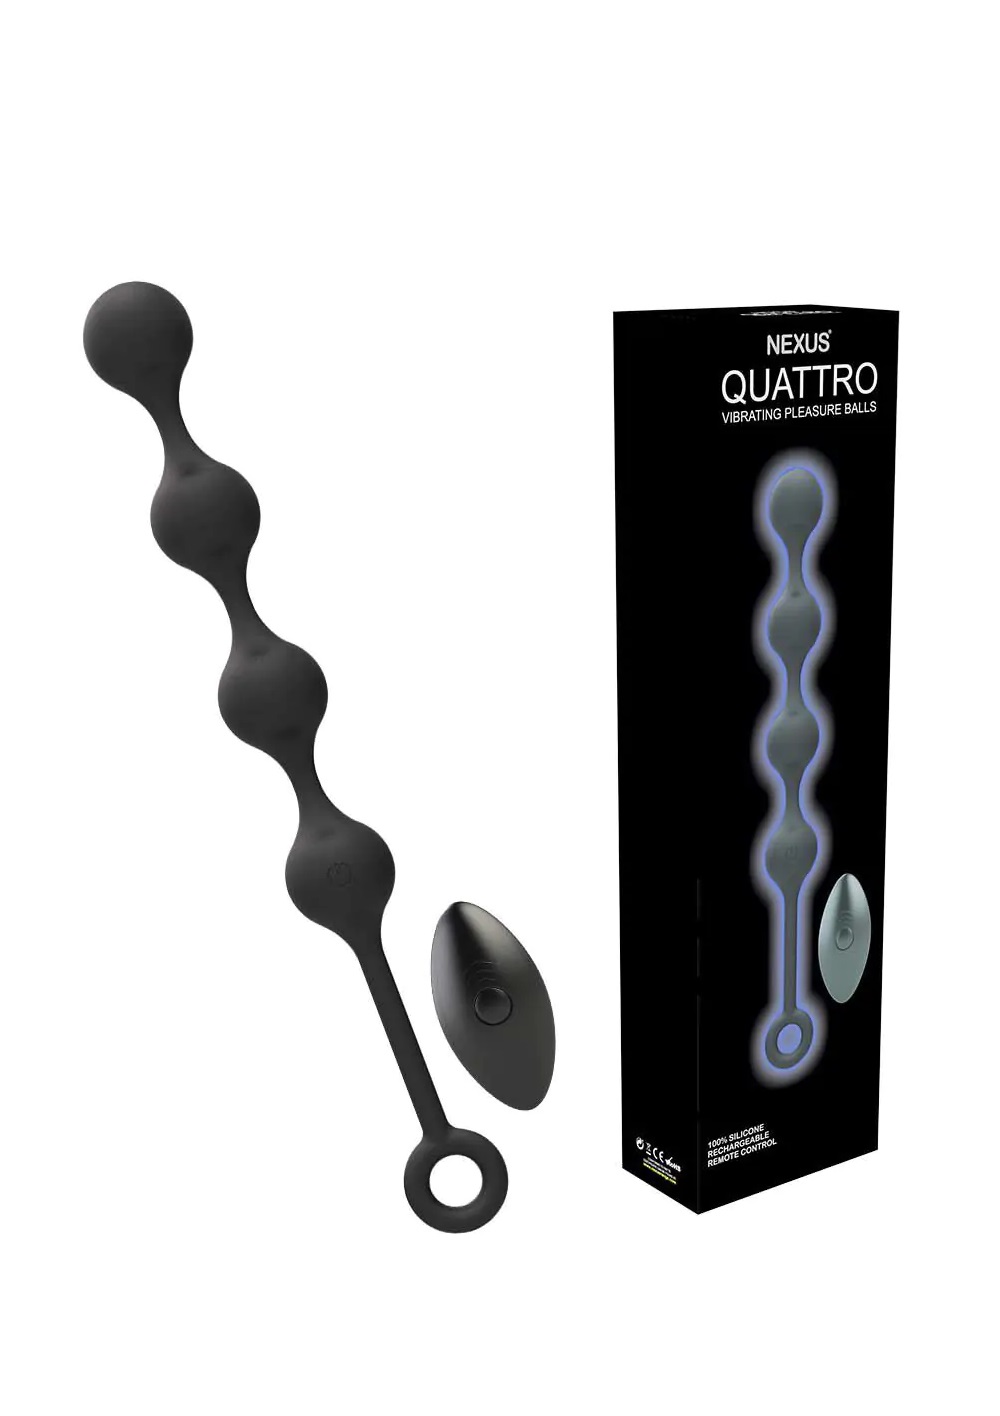 Nexus Quattro Remote Control Vibrating Pleasure Beads.